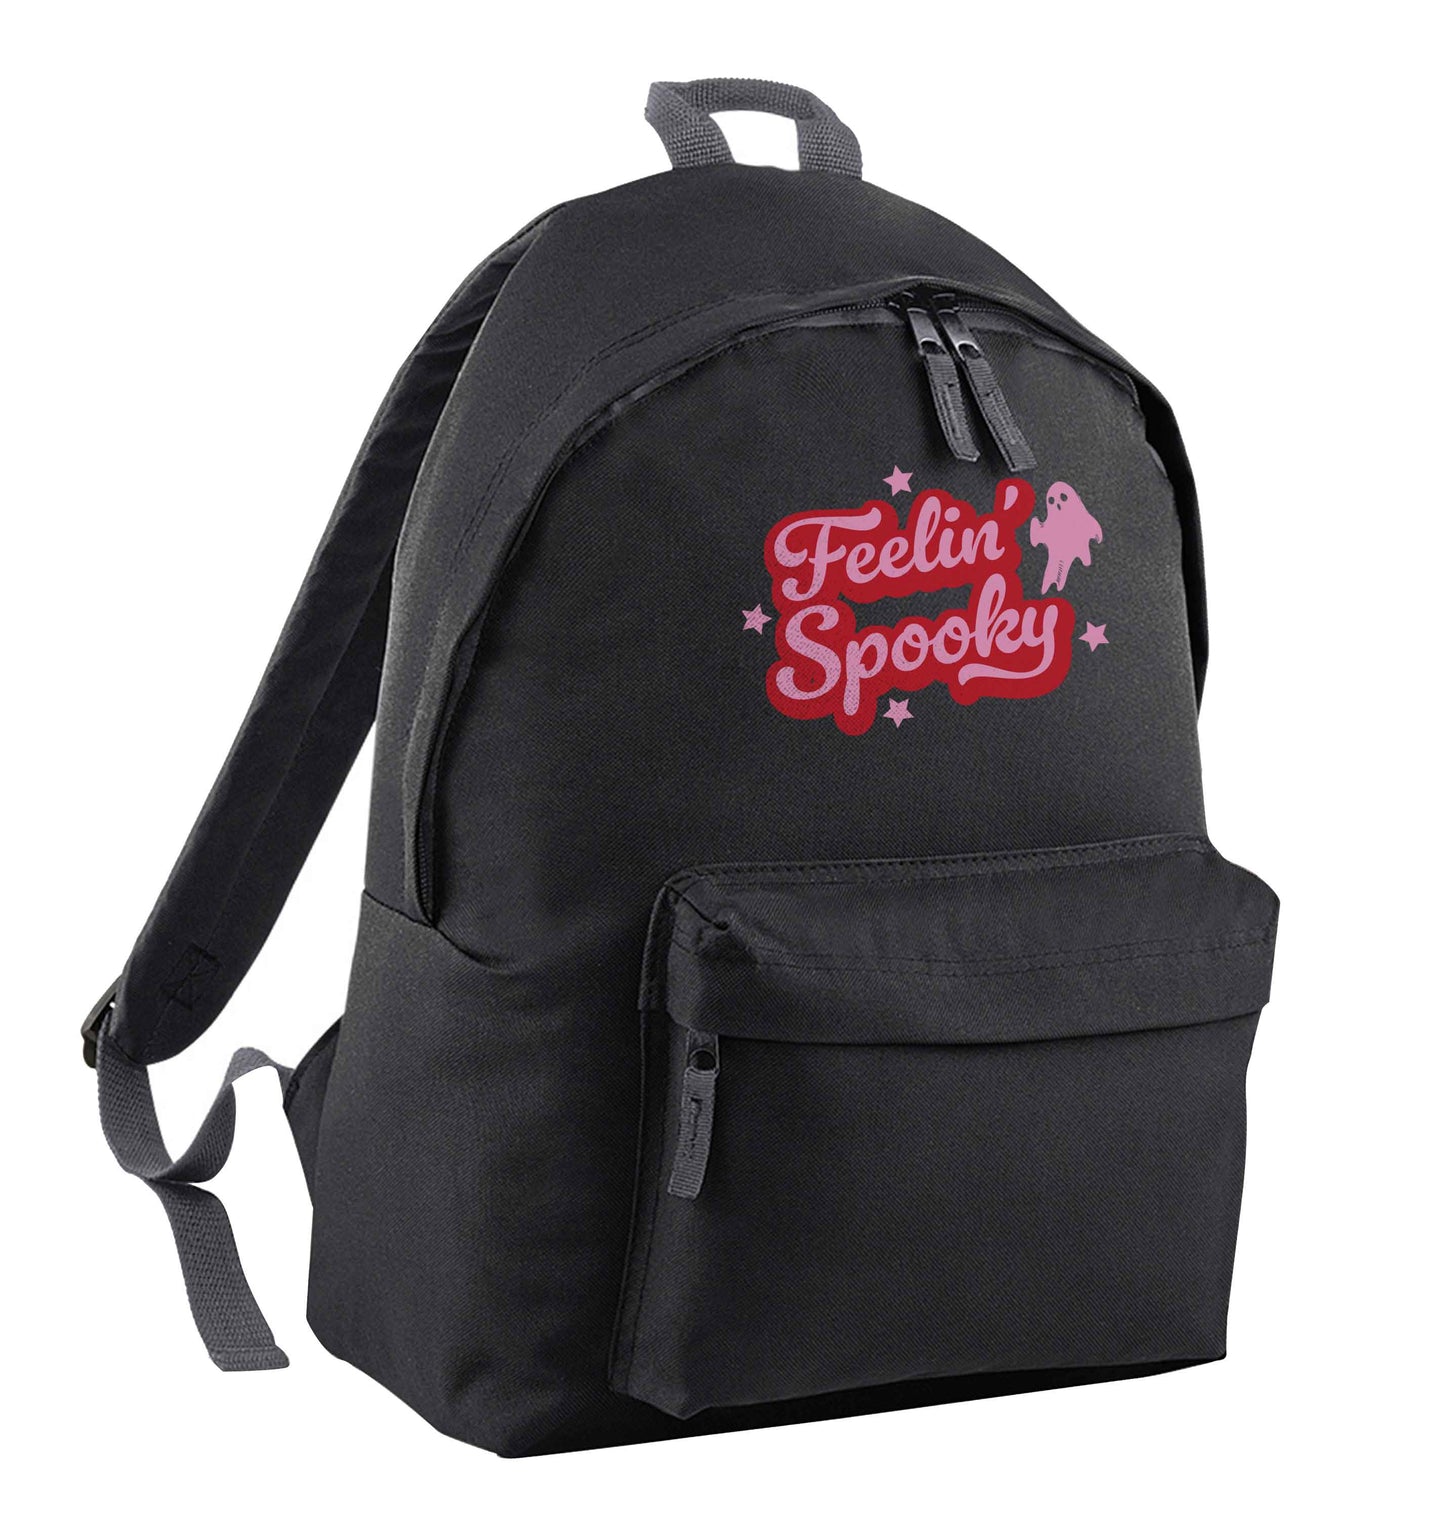 Feelin' Spooky Kit black children's backpack